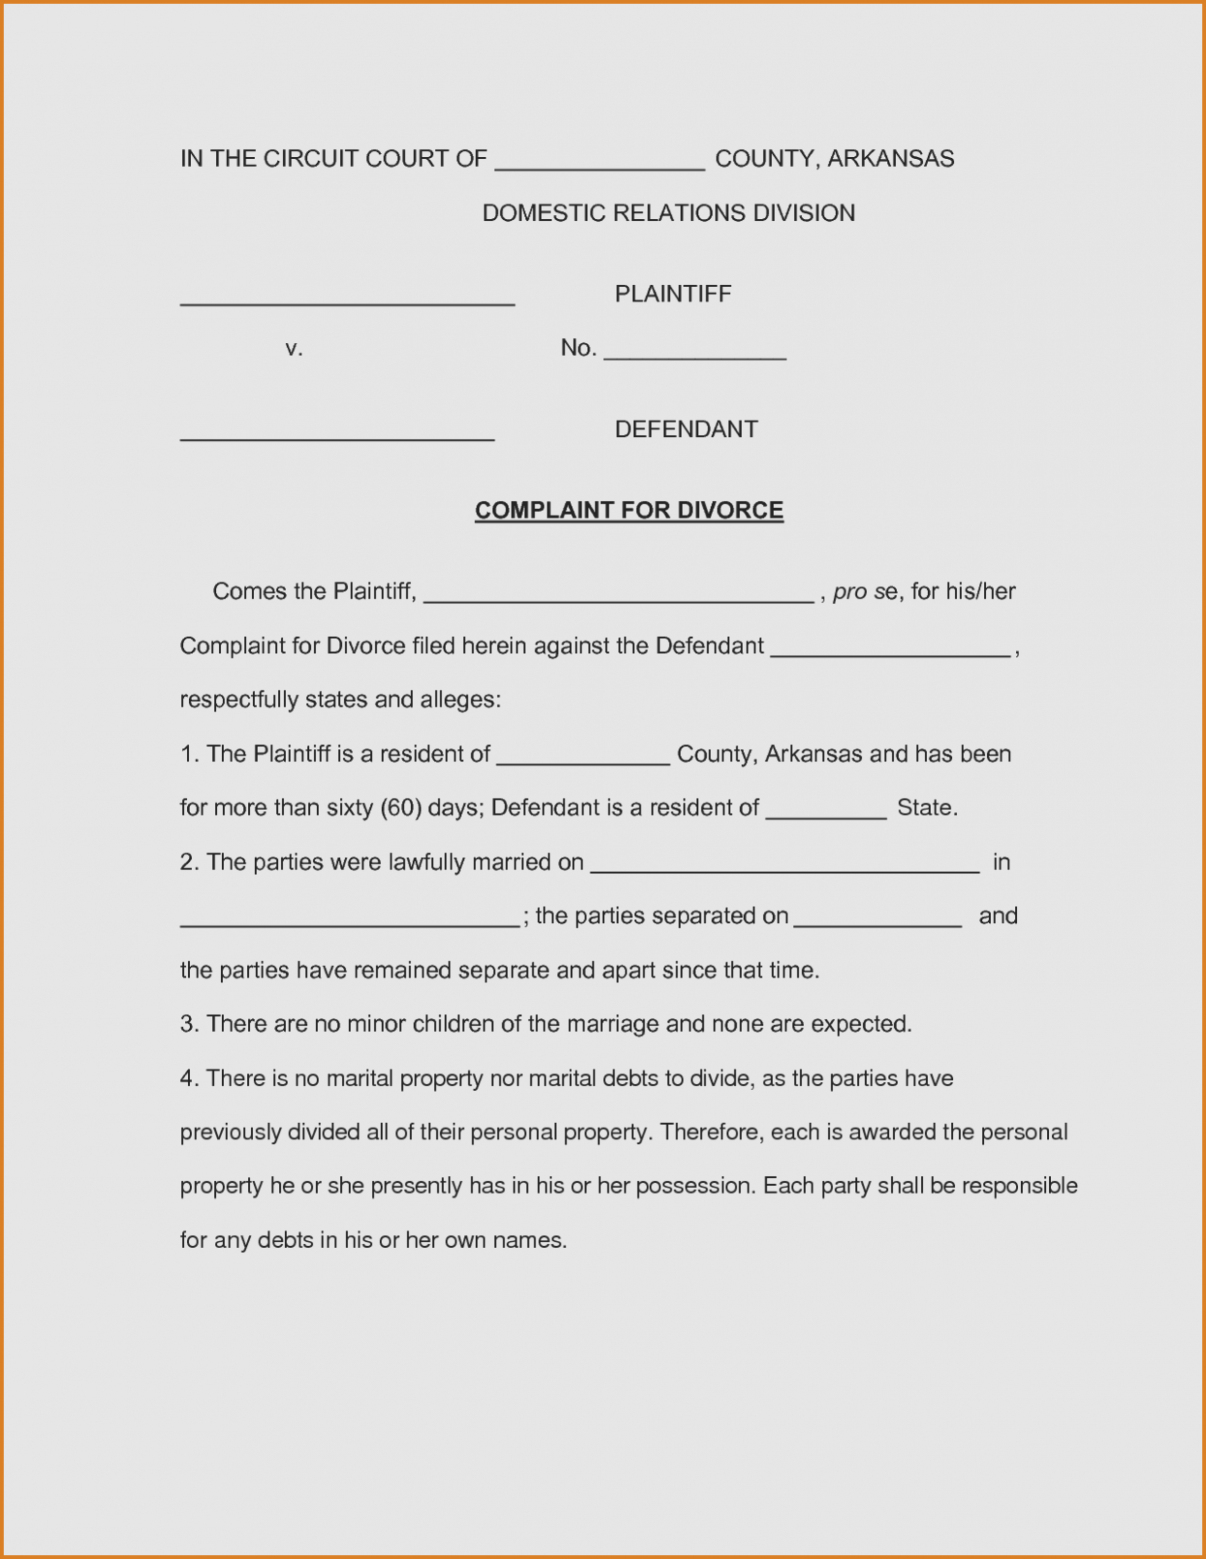 Arkansas Divorce Form Solid Form Information #5836912069551 - Free Printable Divorce Papers For Arkansas